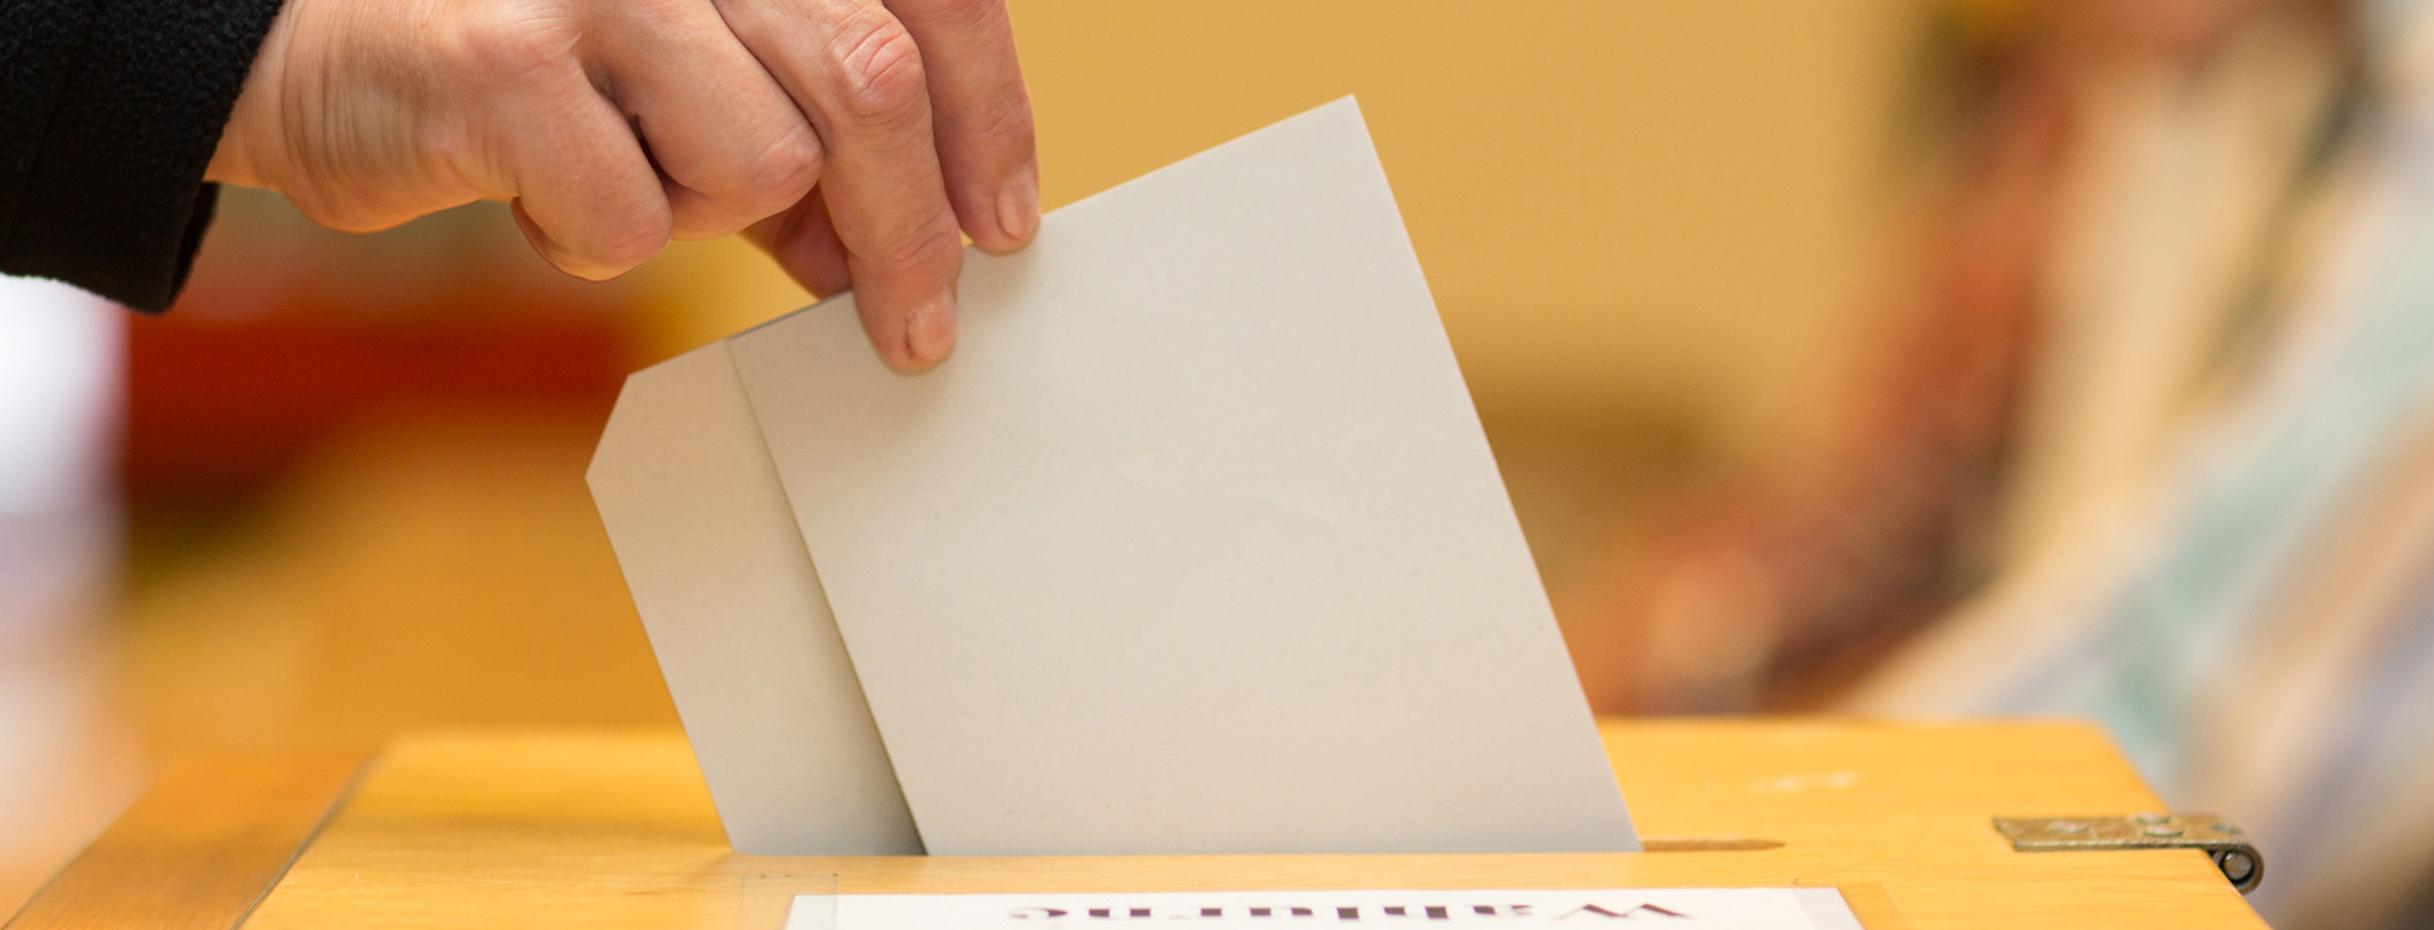 Stimmzettel in Wahlurne geworfen. Quelle: Fotolia